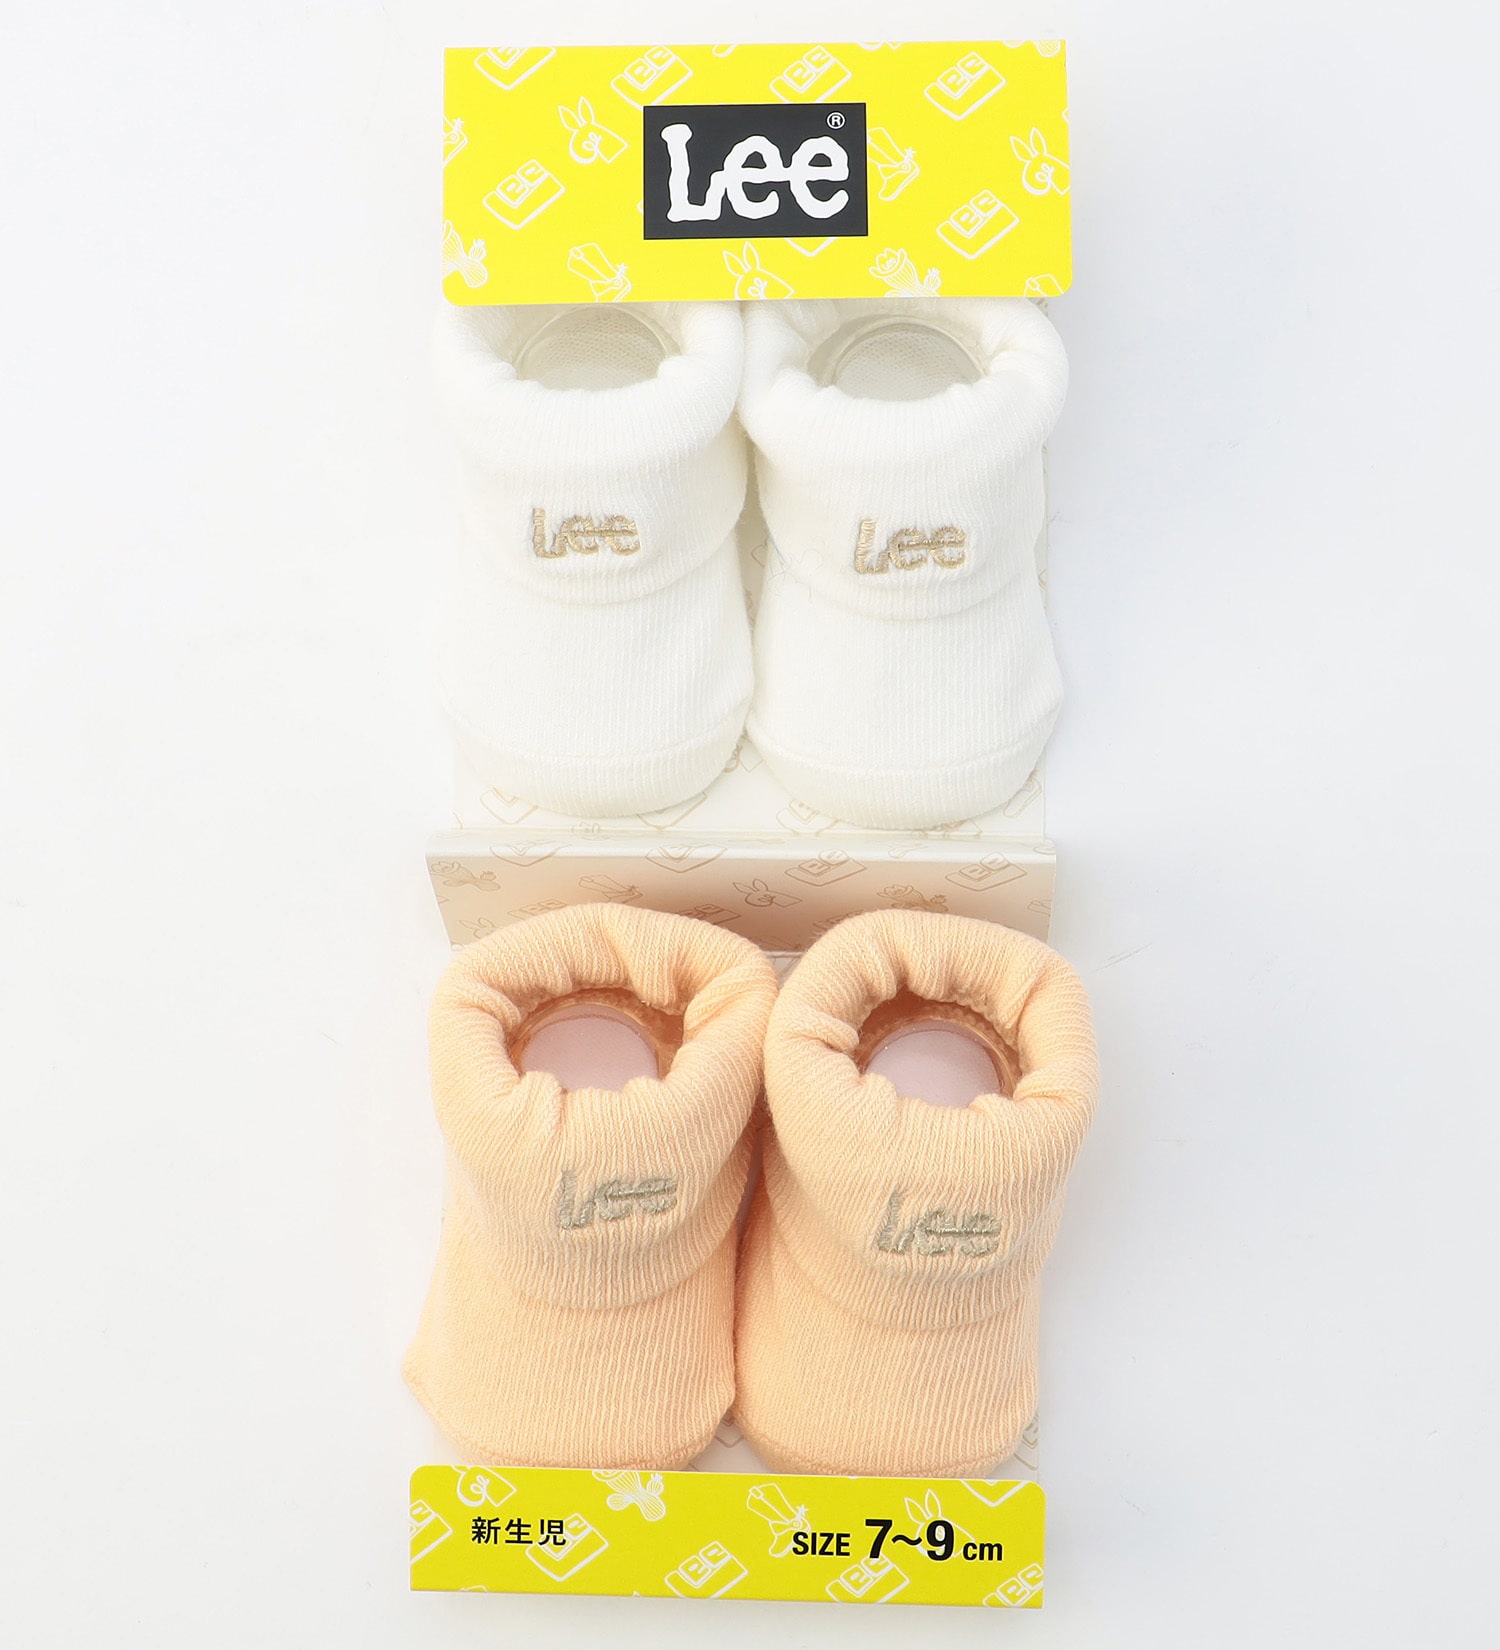 Lee(リー)のLee 新生児ソックス 2足組|ファッション雑貨/靴下/キッズ|その他